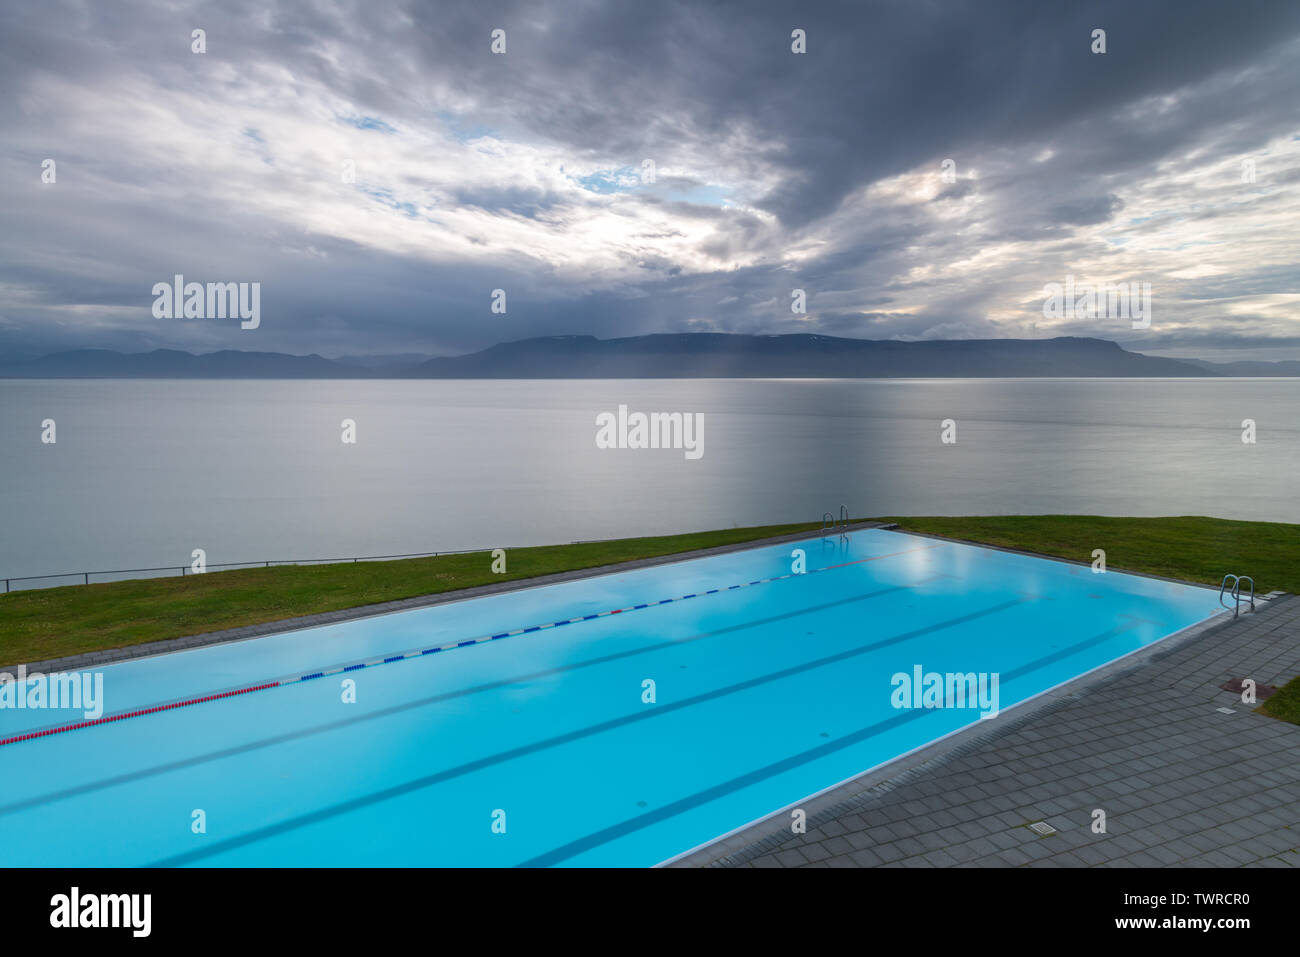 Berühmte Hofsos, Schwimmbad Thermalbad in einem kleinen isländischen Stadt.  Bekannte touristische Destination für Hot Pool schwimmen mit Blick auf  einen Fjord Stockfotografie - Alamy